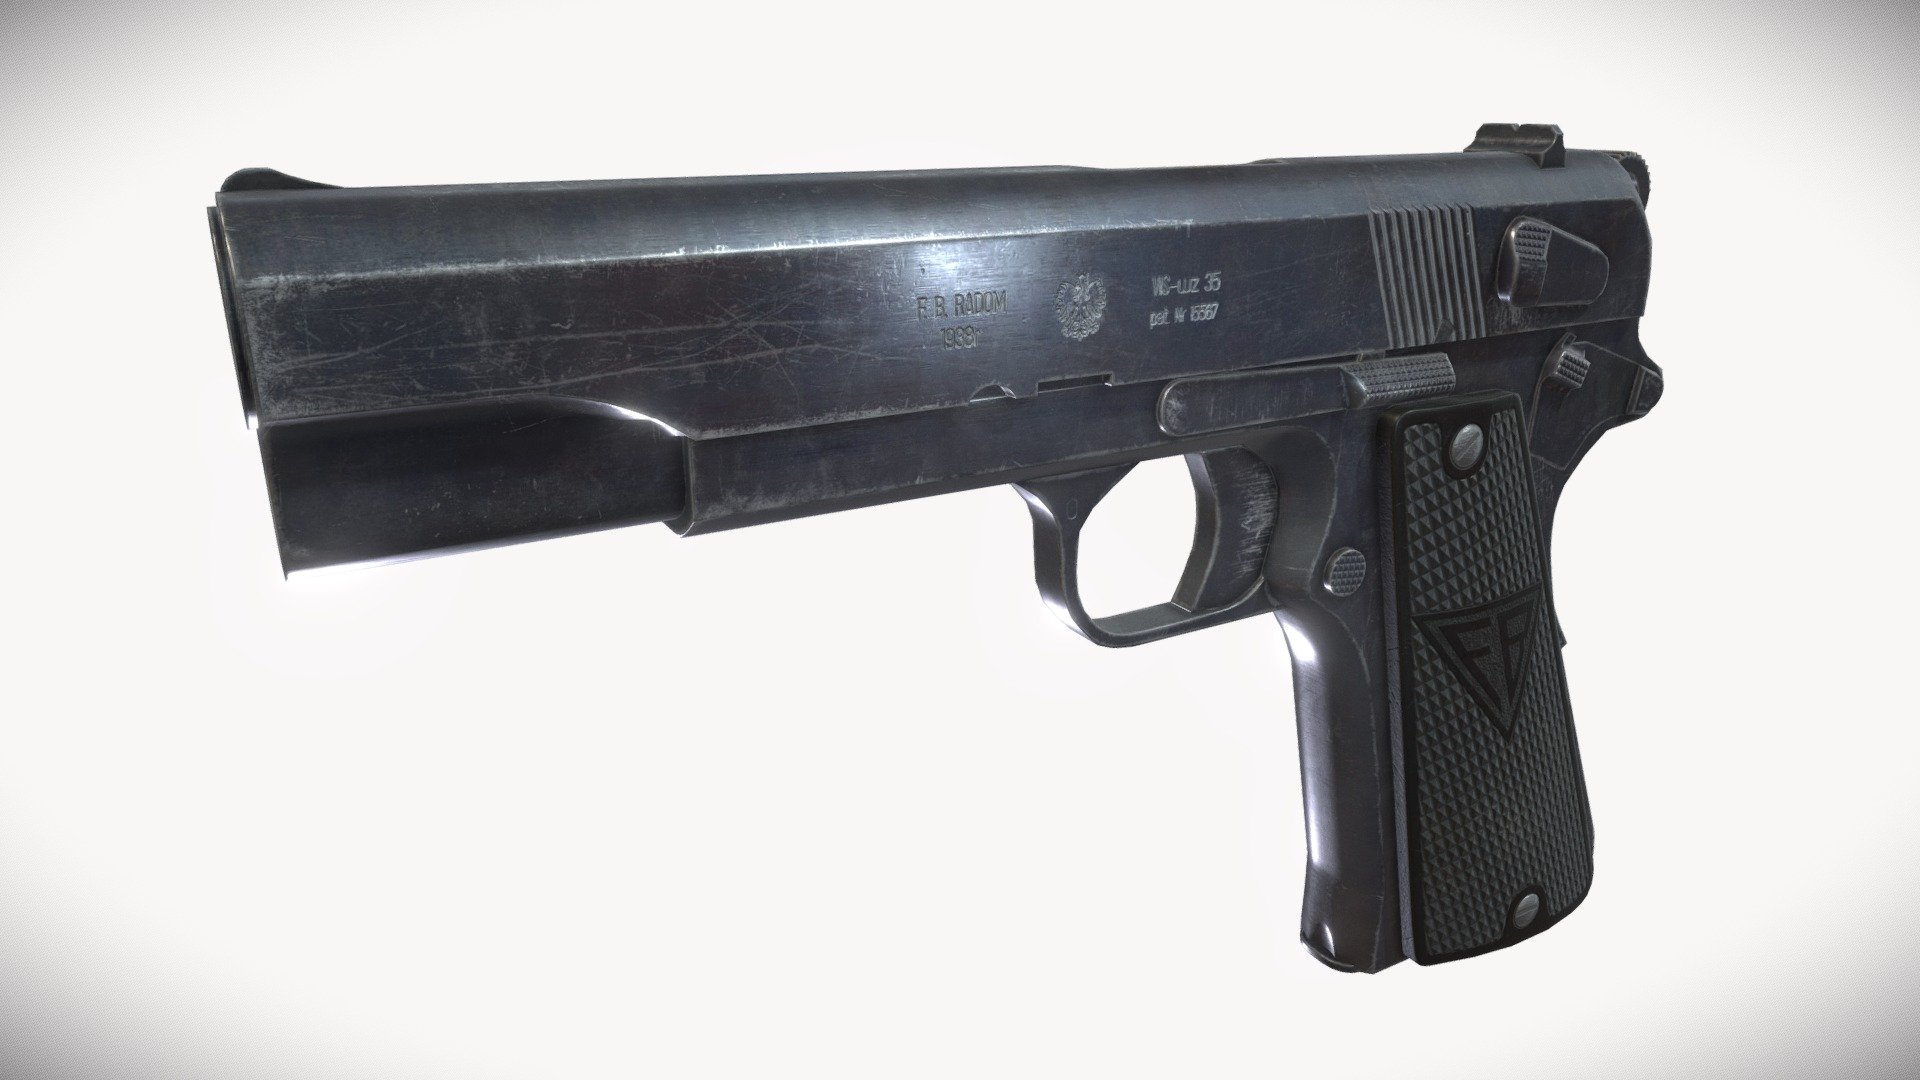 Legendary polish pistol VIS wz. 35 - VIS wz. 35 pistol - 3D model by Bartek R (@bartekrz) 3d model